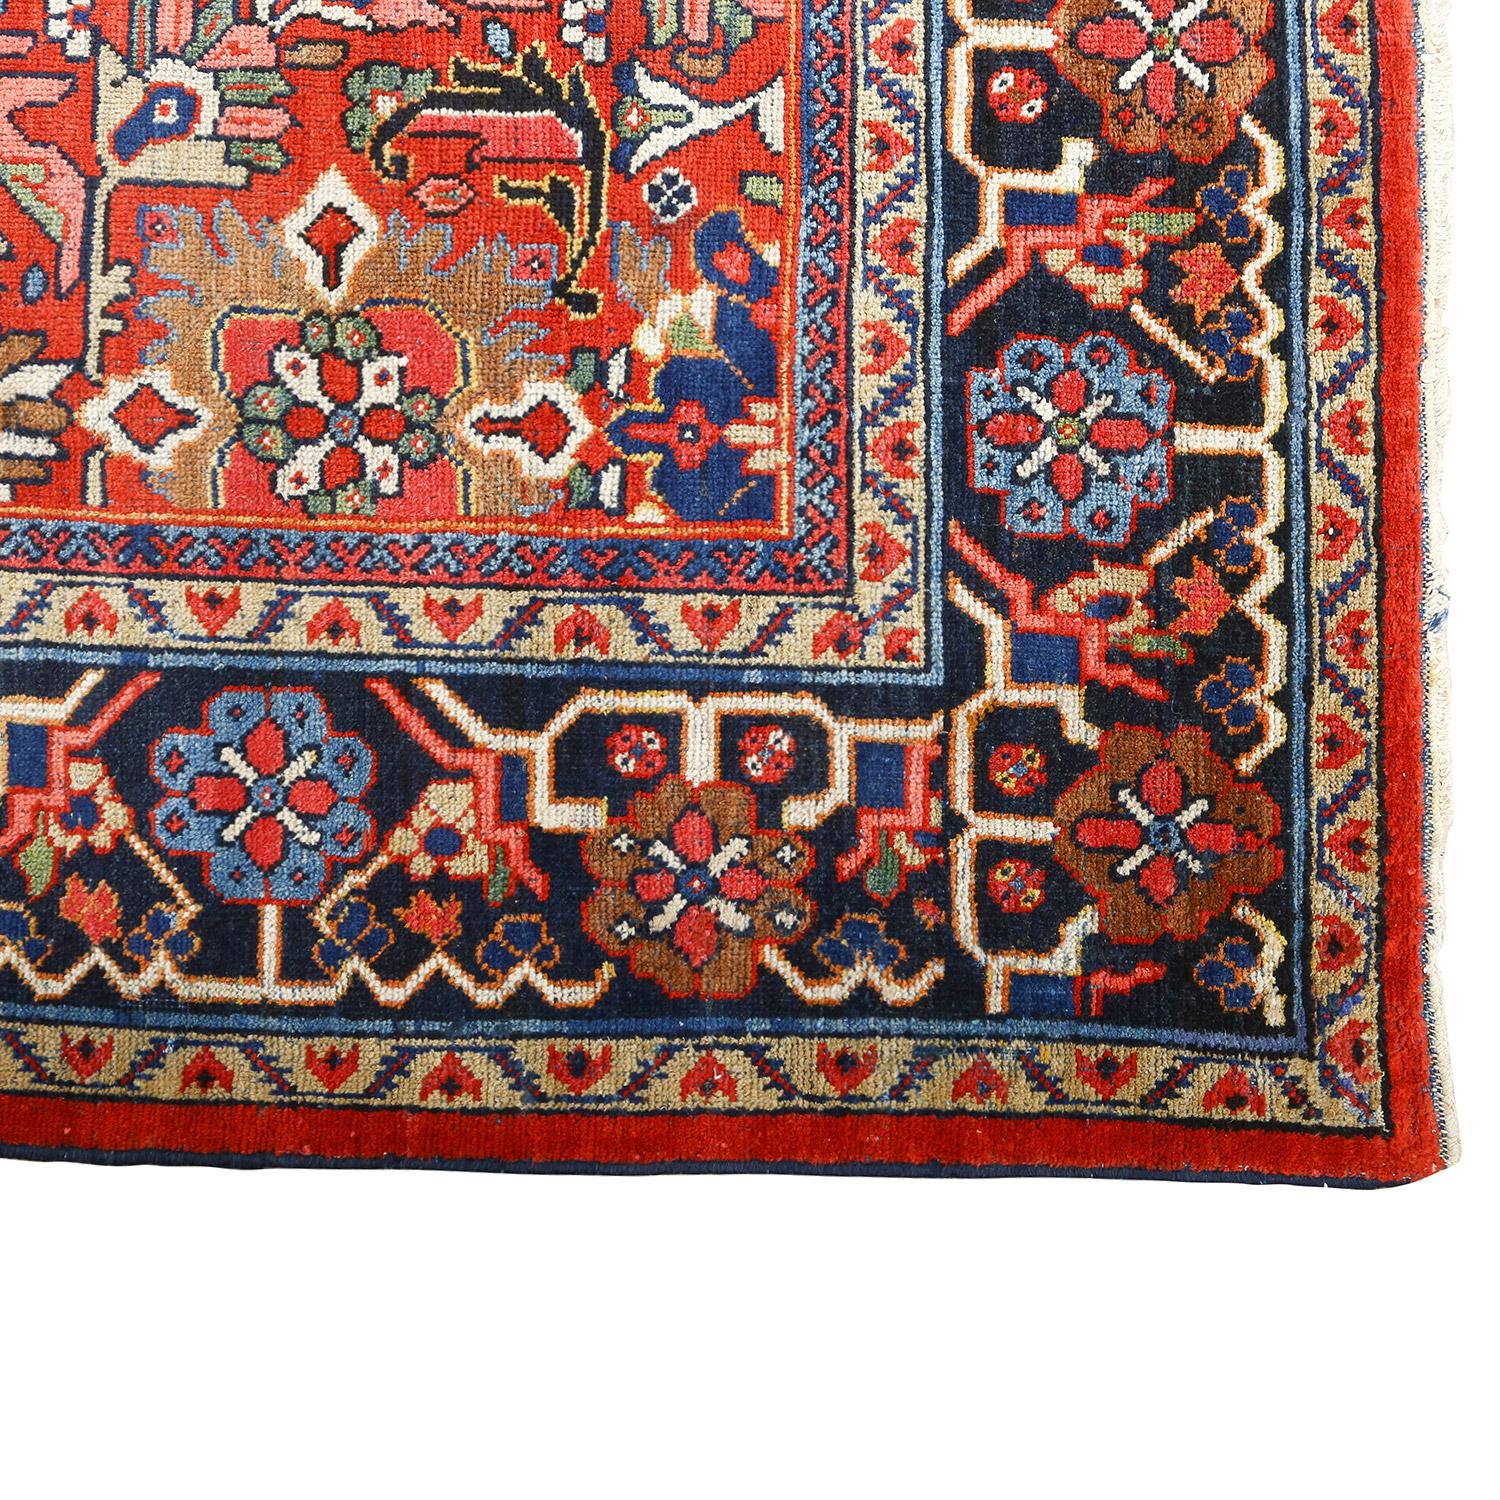 Un tapis Sultanabad ancien orné d'un Design/One est un chef-d'œuvre qui transcende le temps, mêlant le riche héritage de l'artisanat persan à une symphonie enchanteresse de motifs et de couleurs. Provenant des centres de tissage réputés de